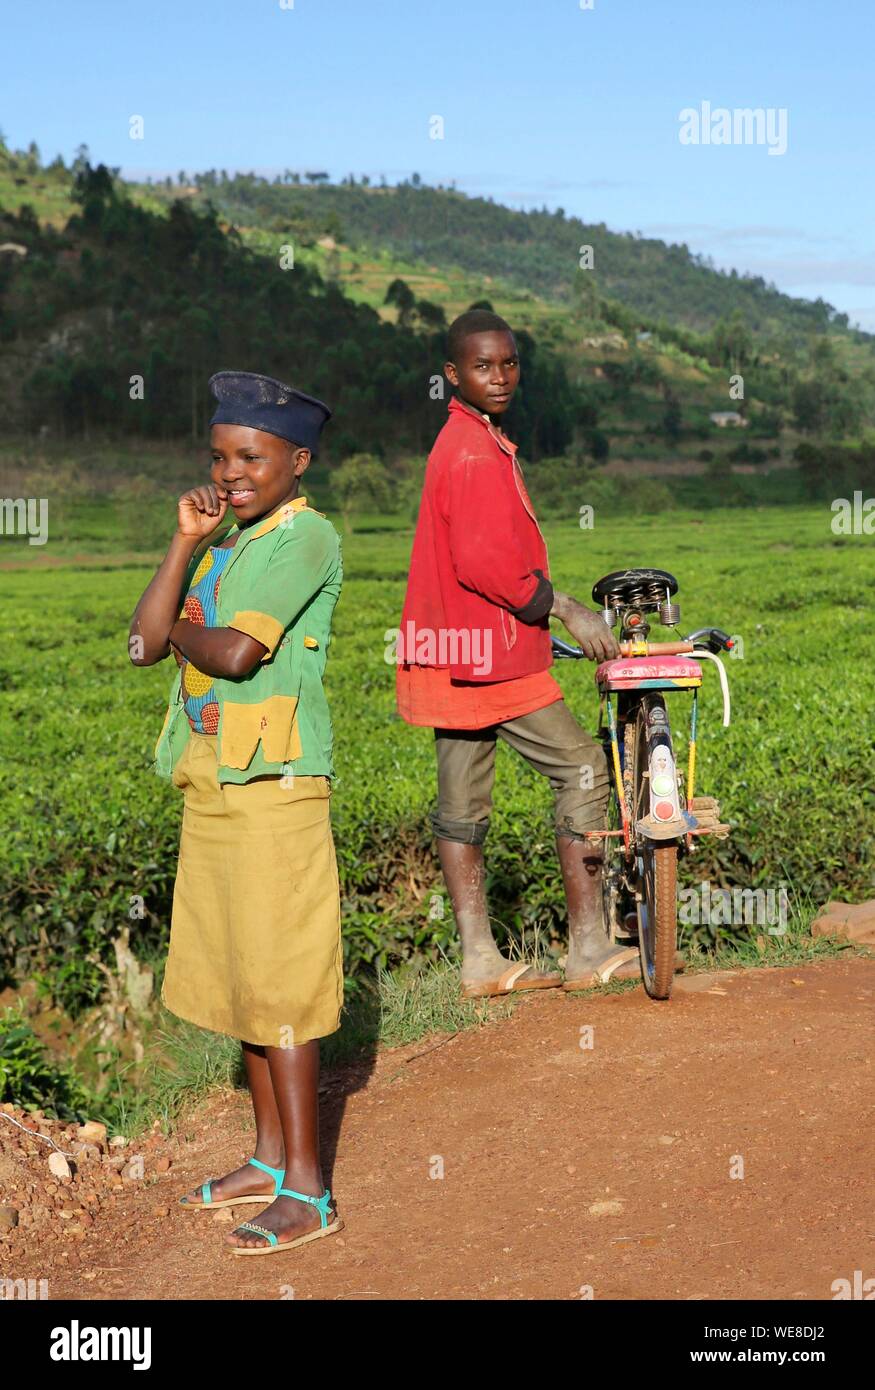 Il Ruanda, al centro del paese, bambini in abiti colorati su una pista di laterite in mezzo al verde delle colline Foto Stock